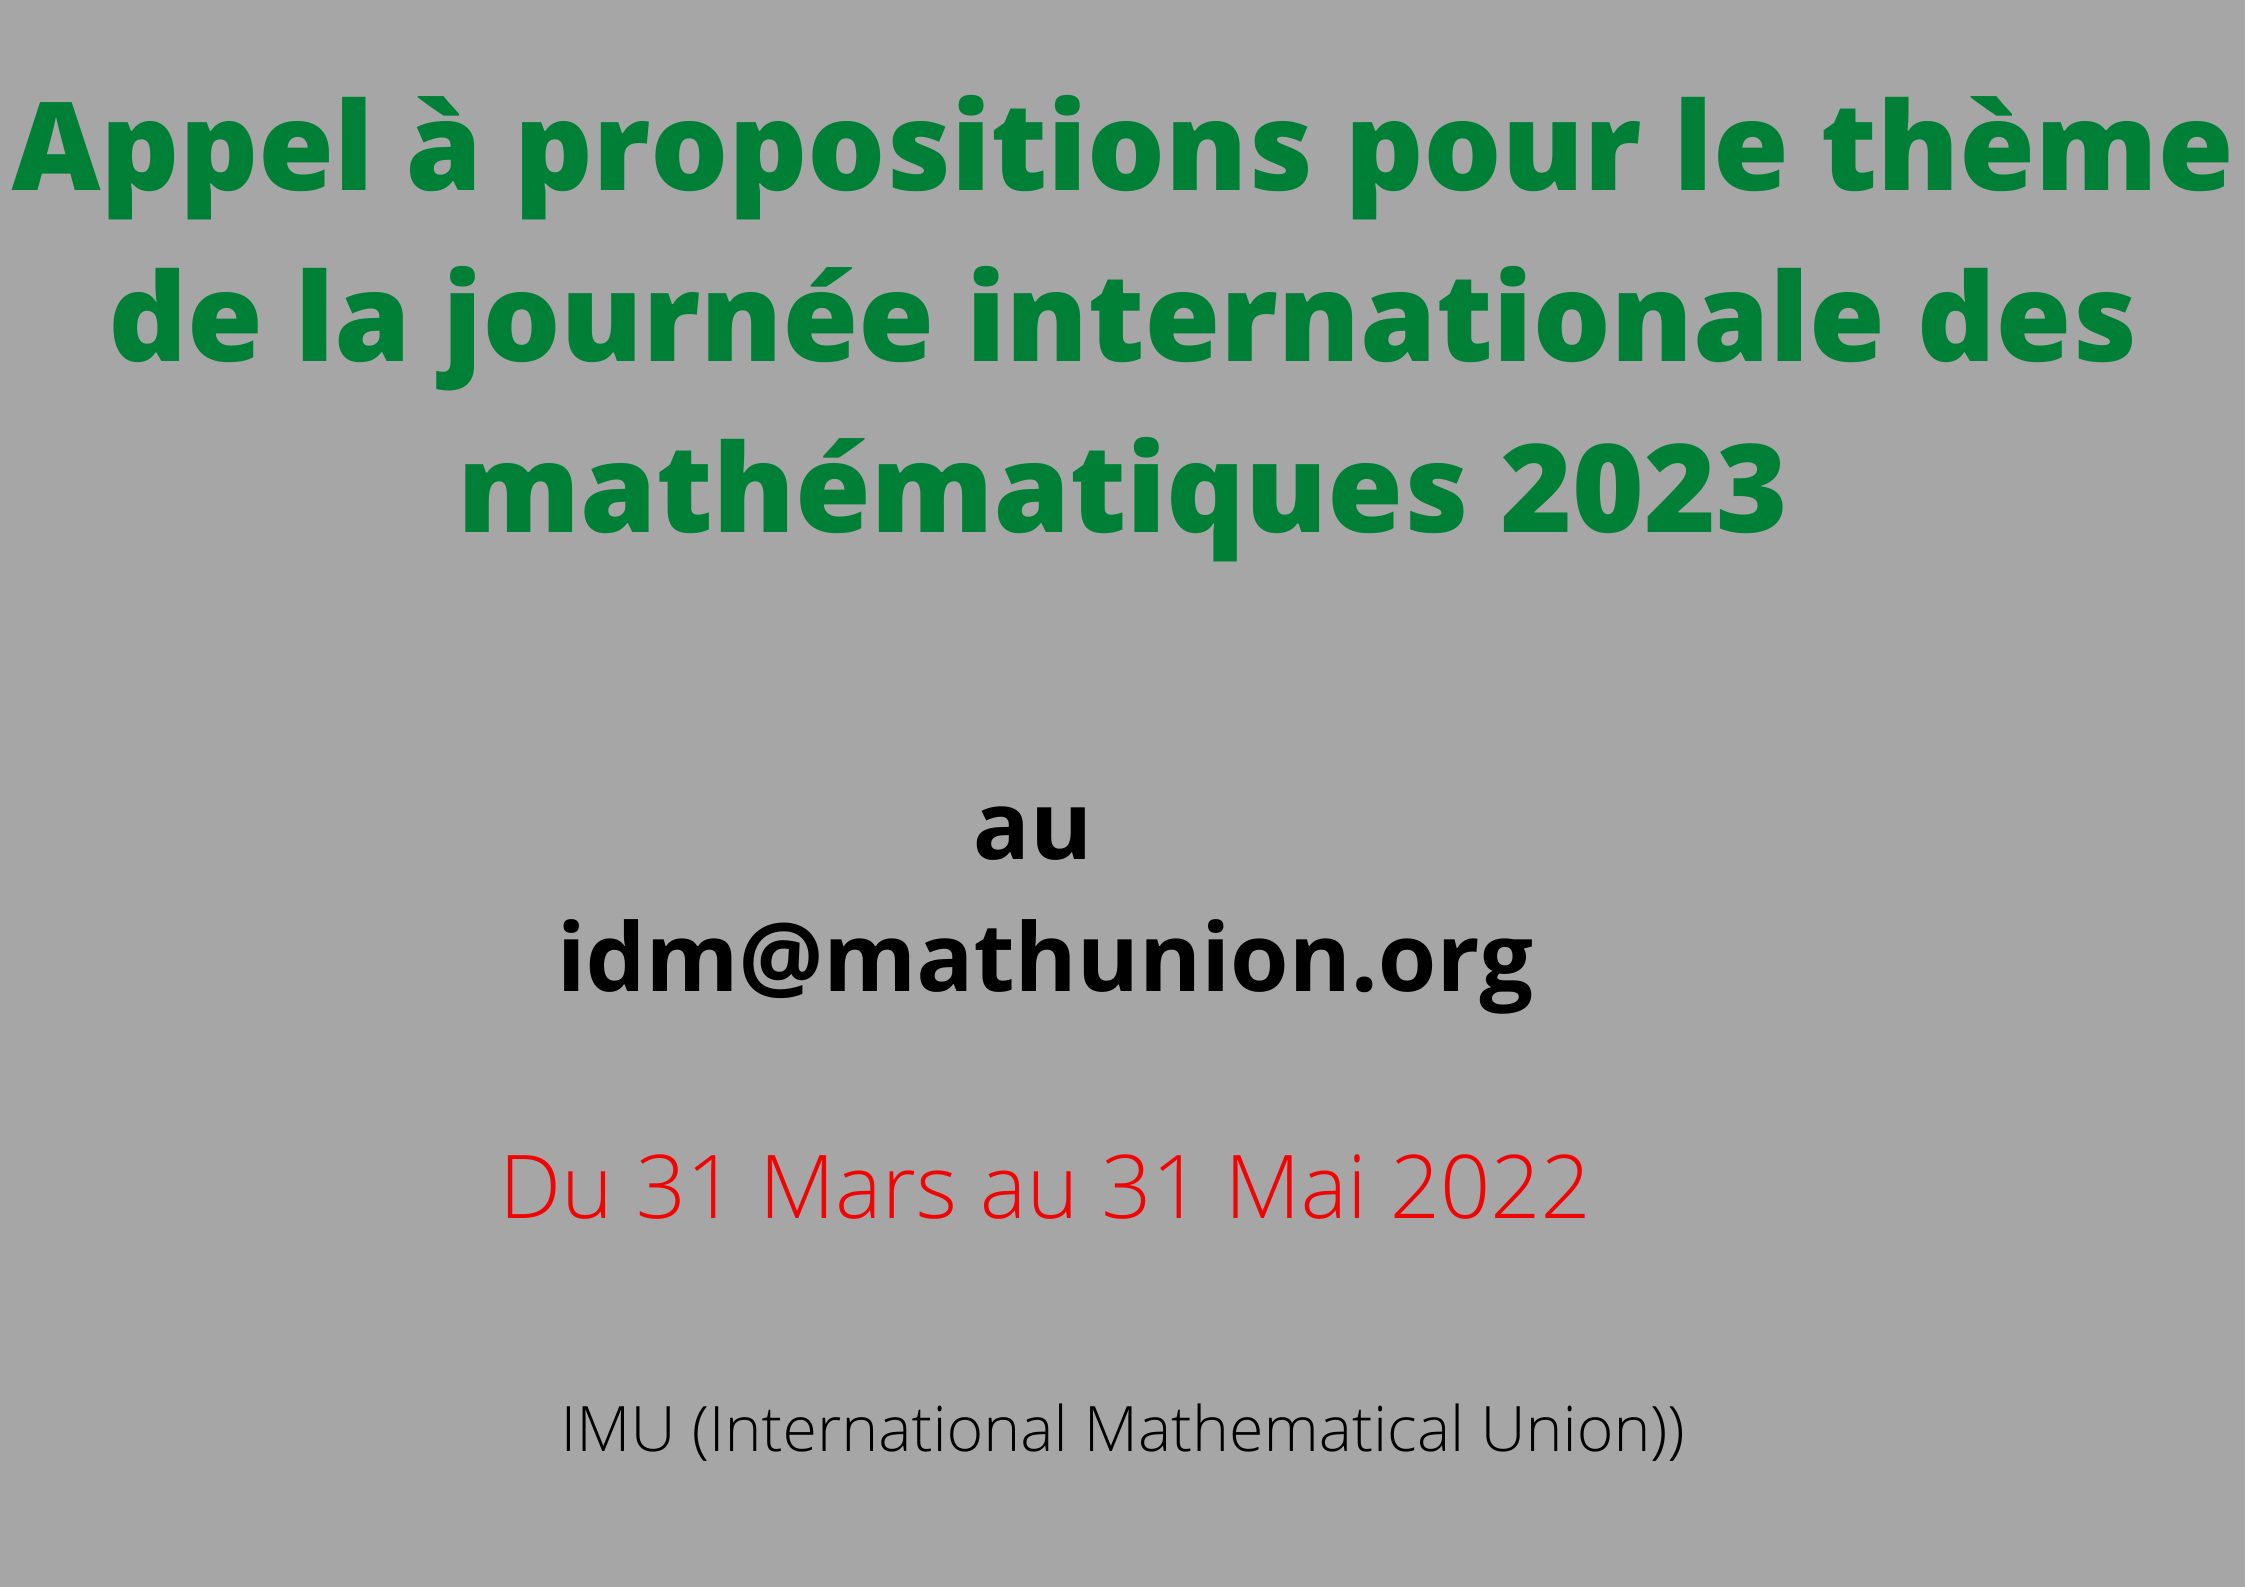 Appel à propositions pour le thème de la journée internationale des mathématiques 2023